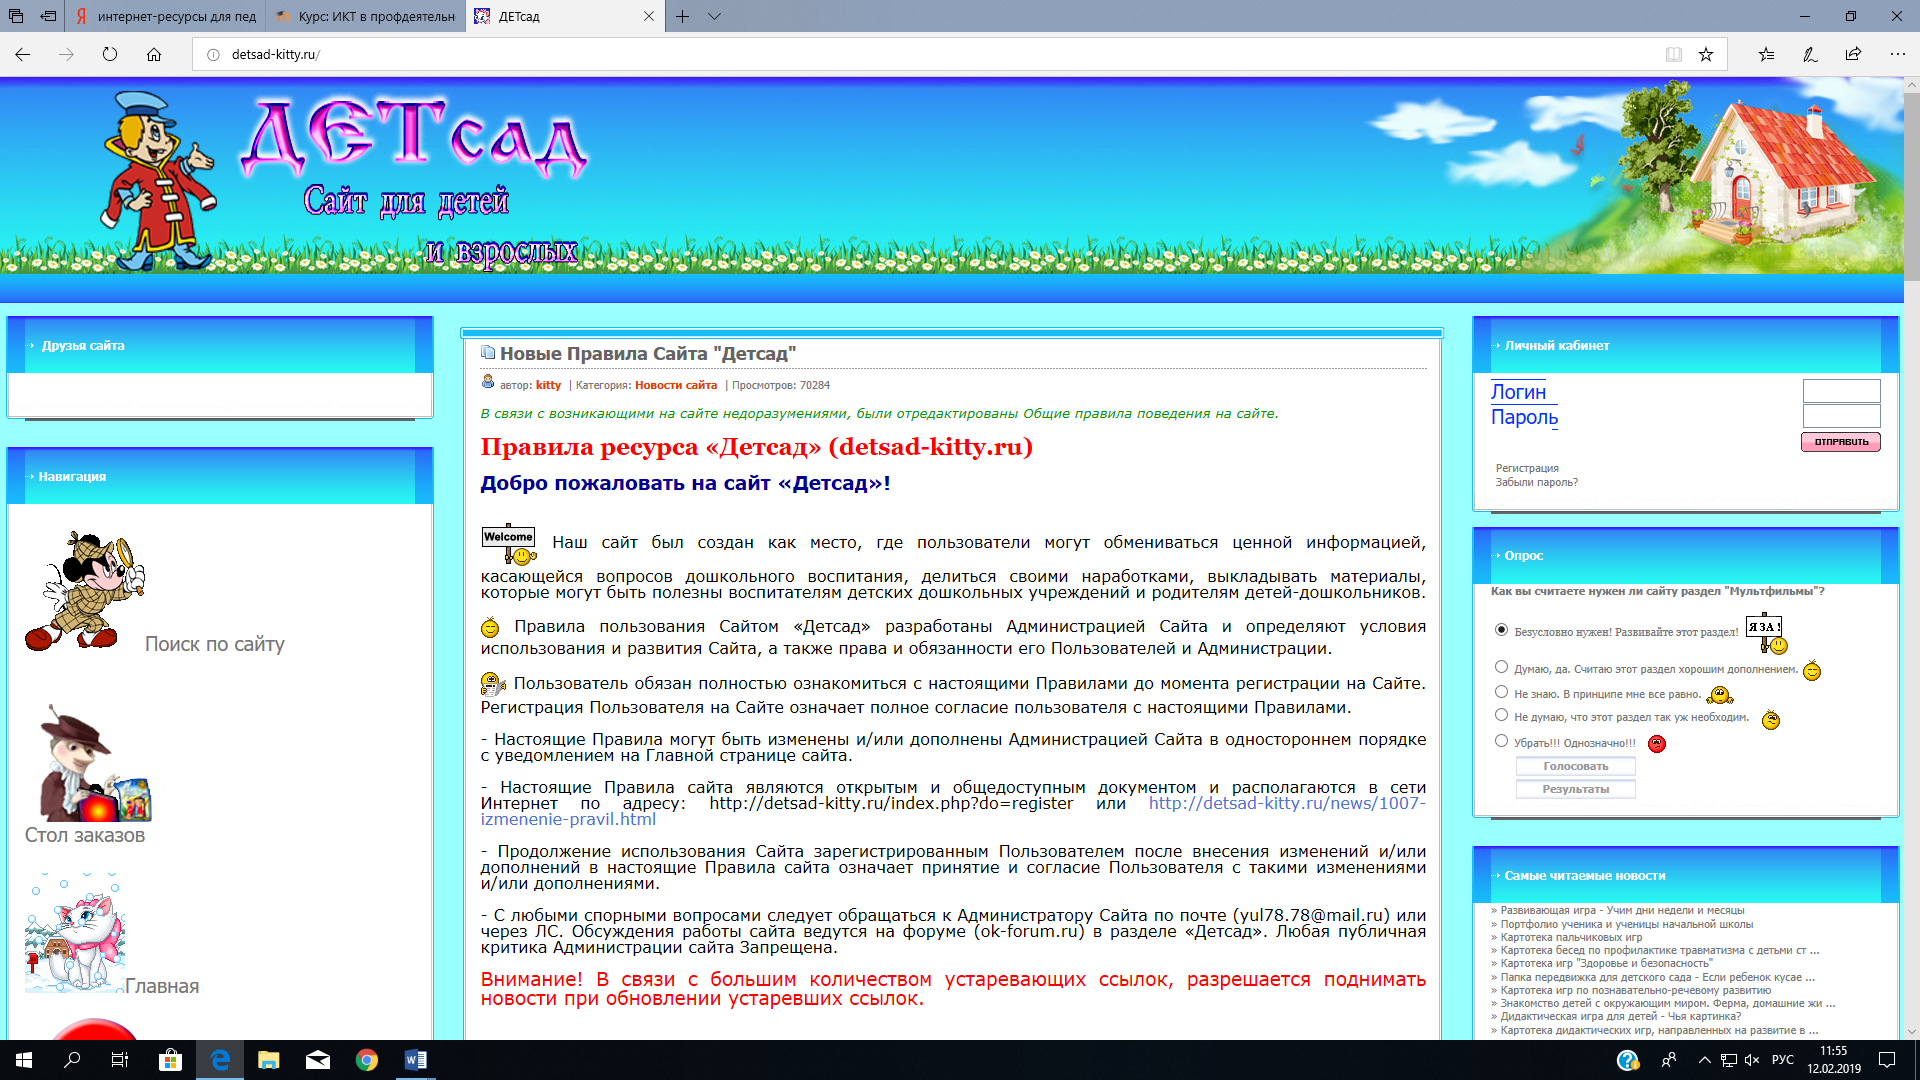 Электронный портал дети. Скриншот сайта детского сада. Детский сад. Сайты детского сада. Детские сайты с играми.